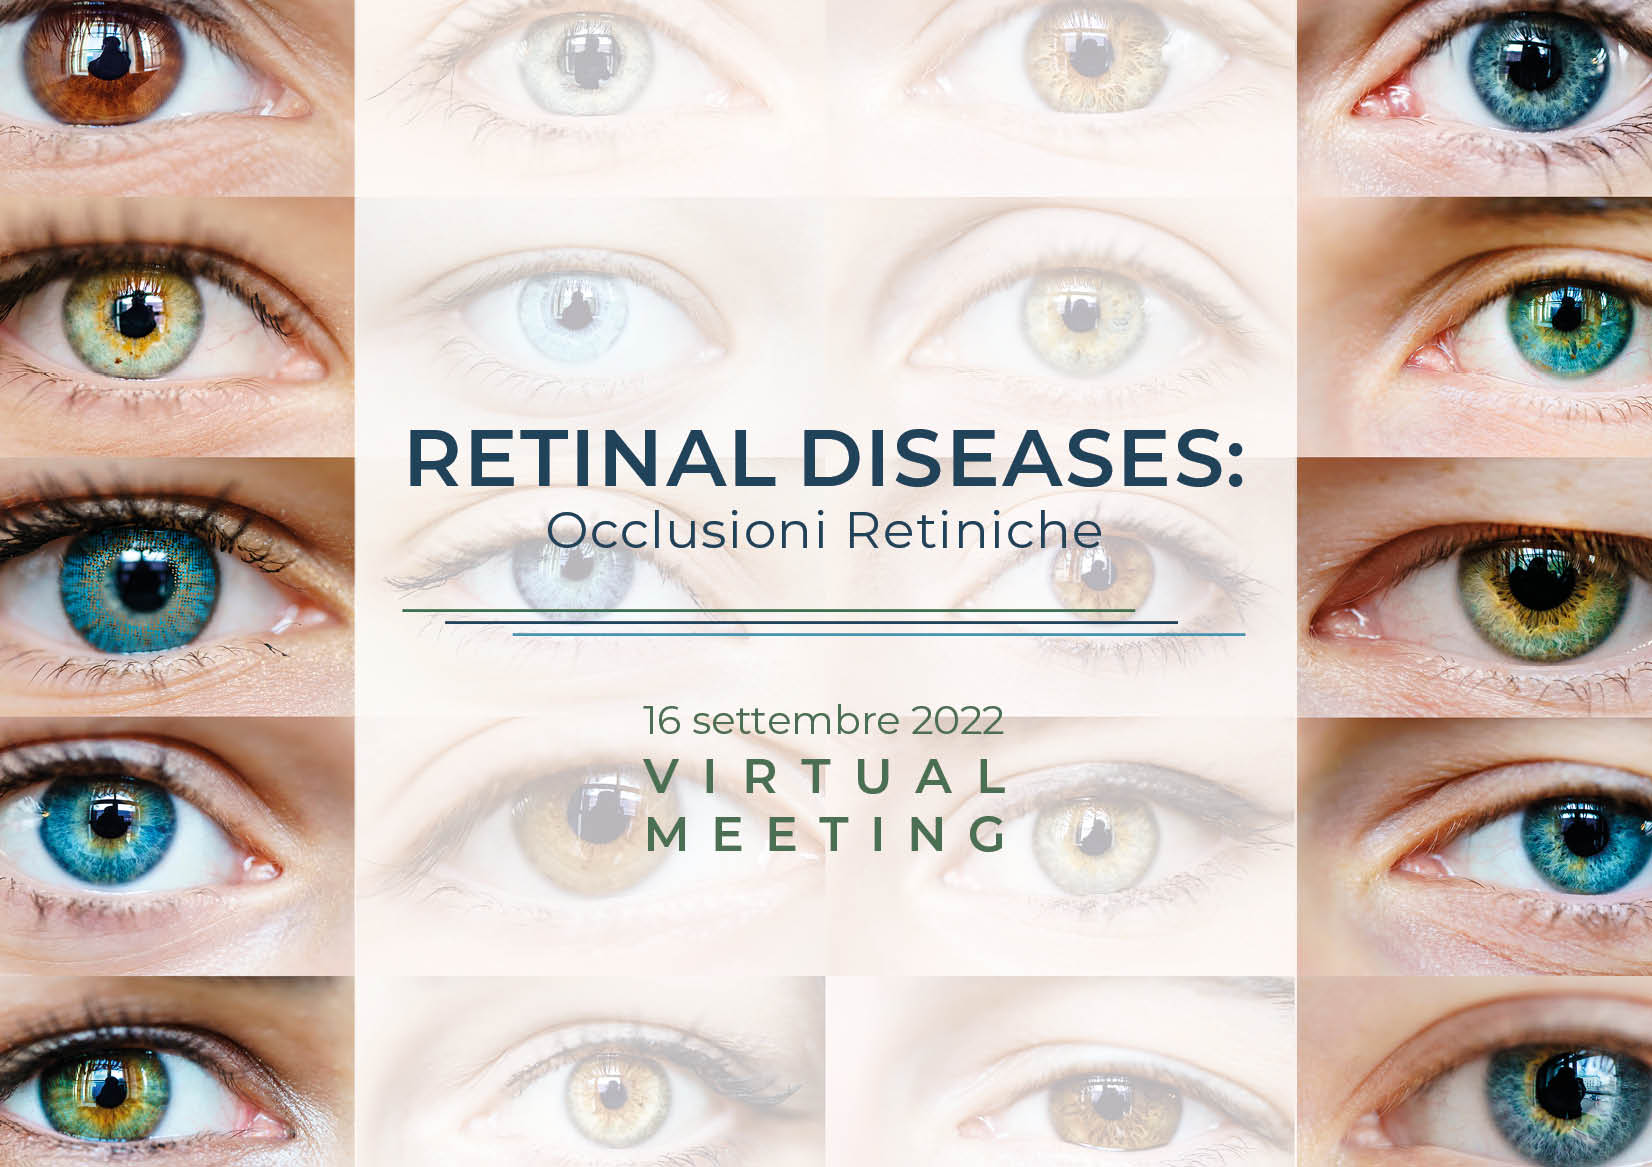 RETINAL DISEASES – Occlusioni retiniche